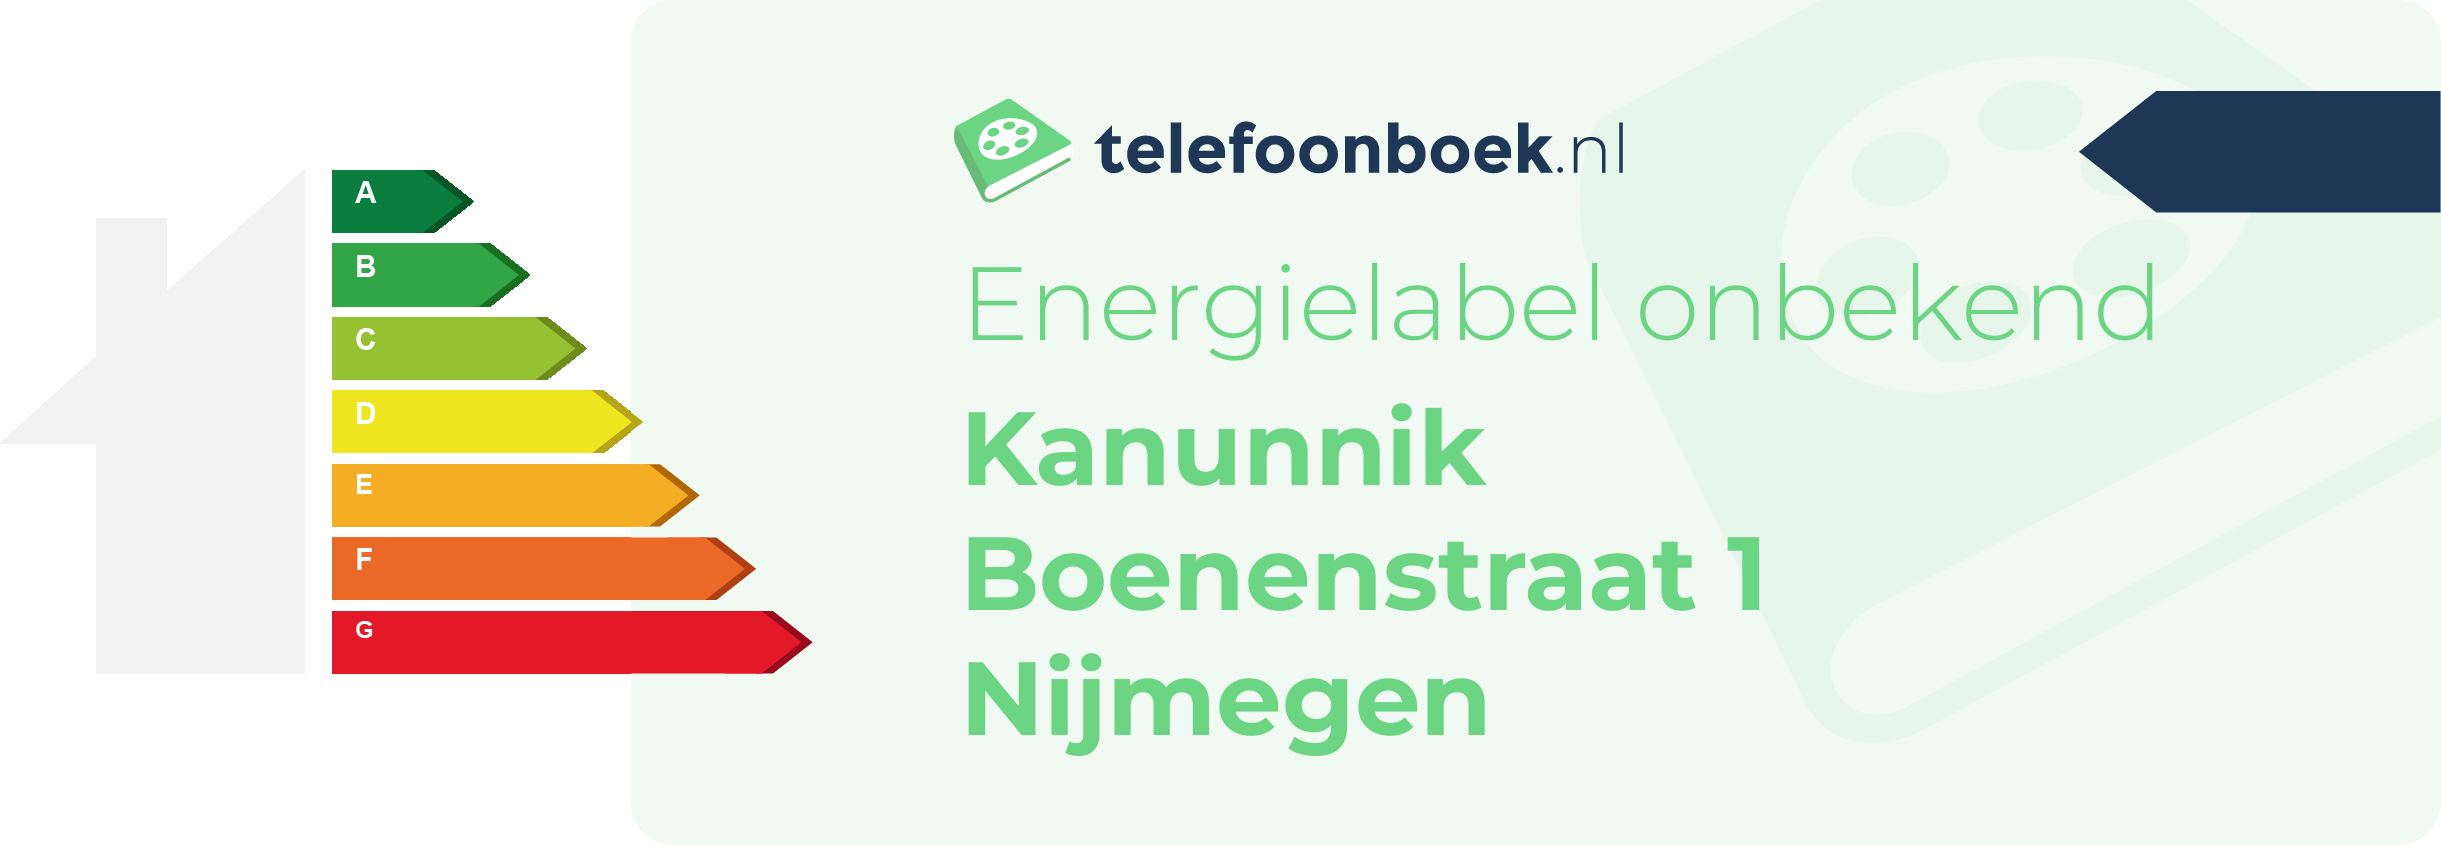 Energielabel Kanunnik Boenenstraat 1 Nijmegen